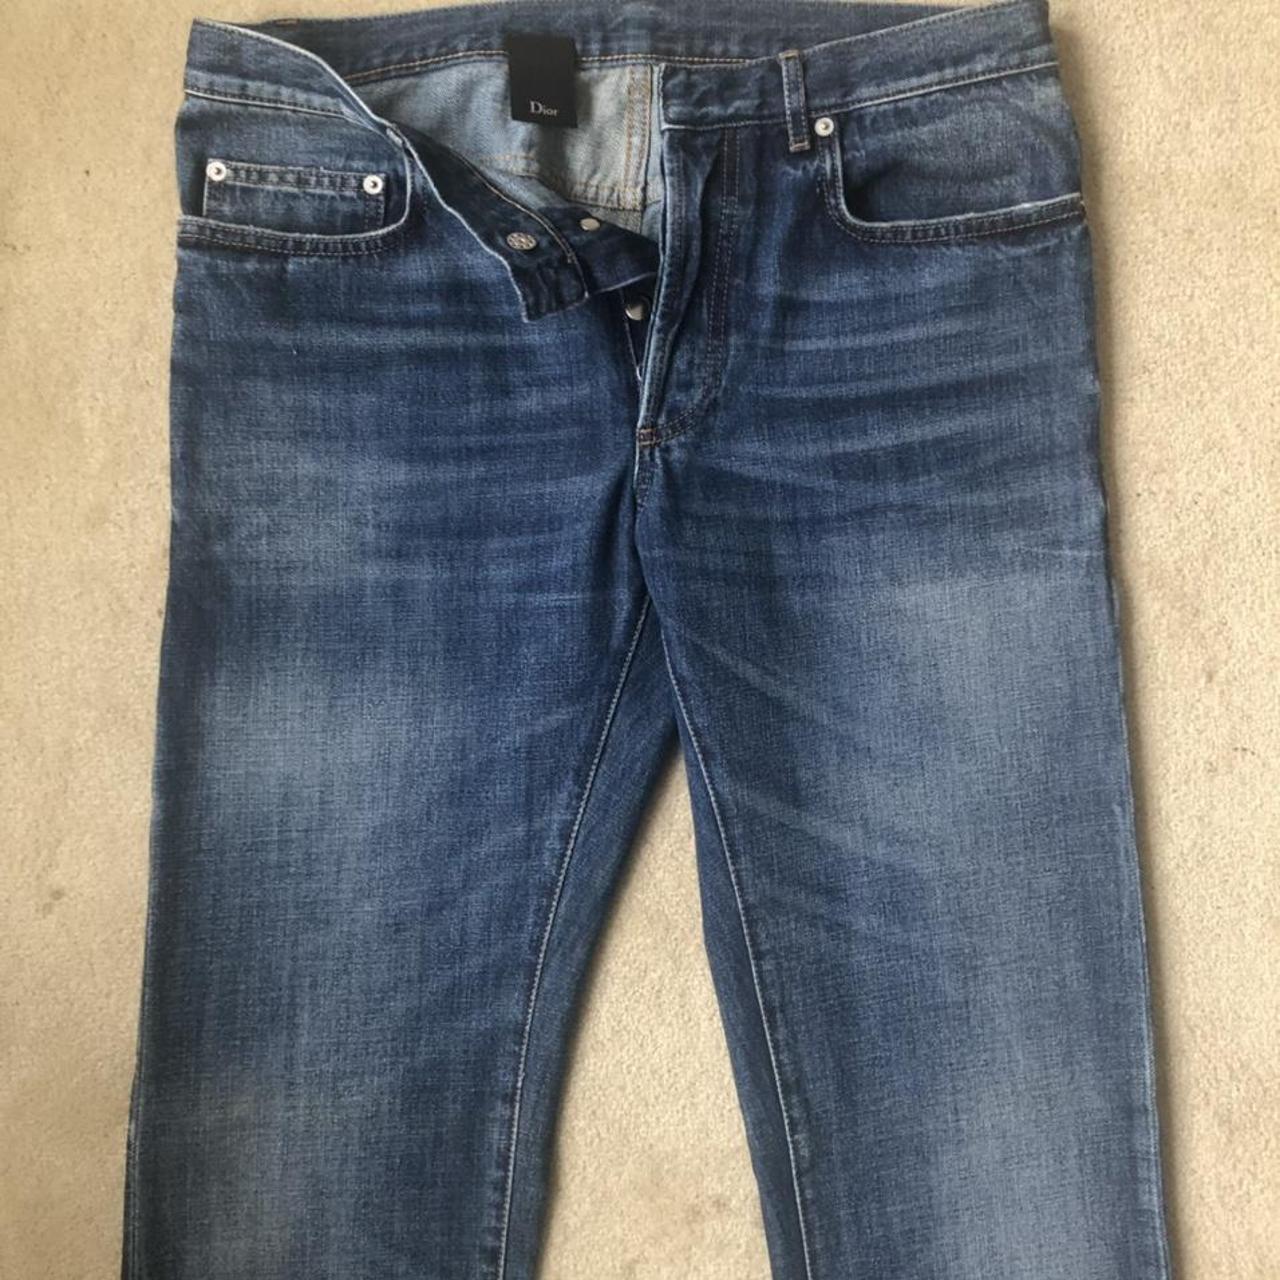 Dior Men's Long Slim-Fit Oblique Jeans